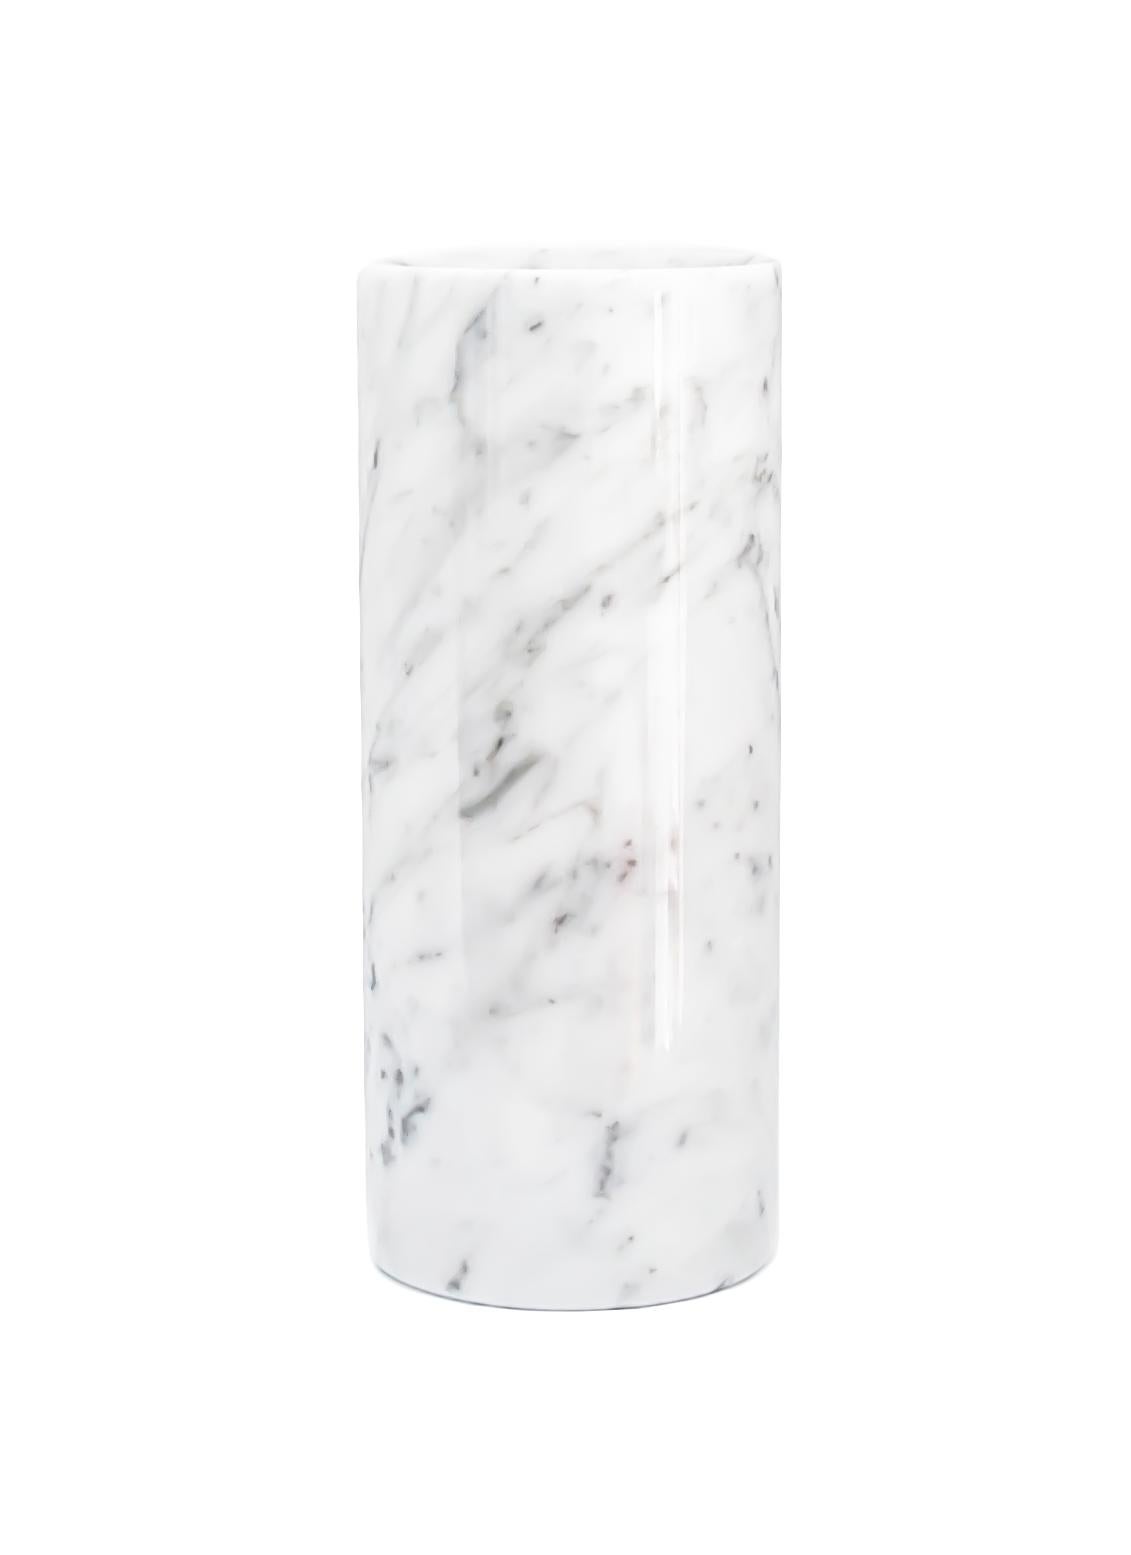 Vase cylindrique en marbre blanc de Carrara fabriqué en Italie, Carrara.
Chaque pièce est en quelque sorte unique (puisque chaque bloc de marbre est différent par ses veines et ses nuances) et fabriquée à la main en Italie. Les légères variations de